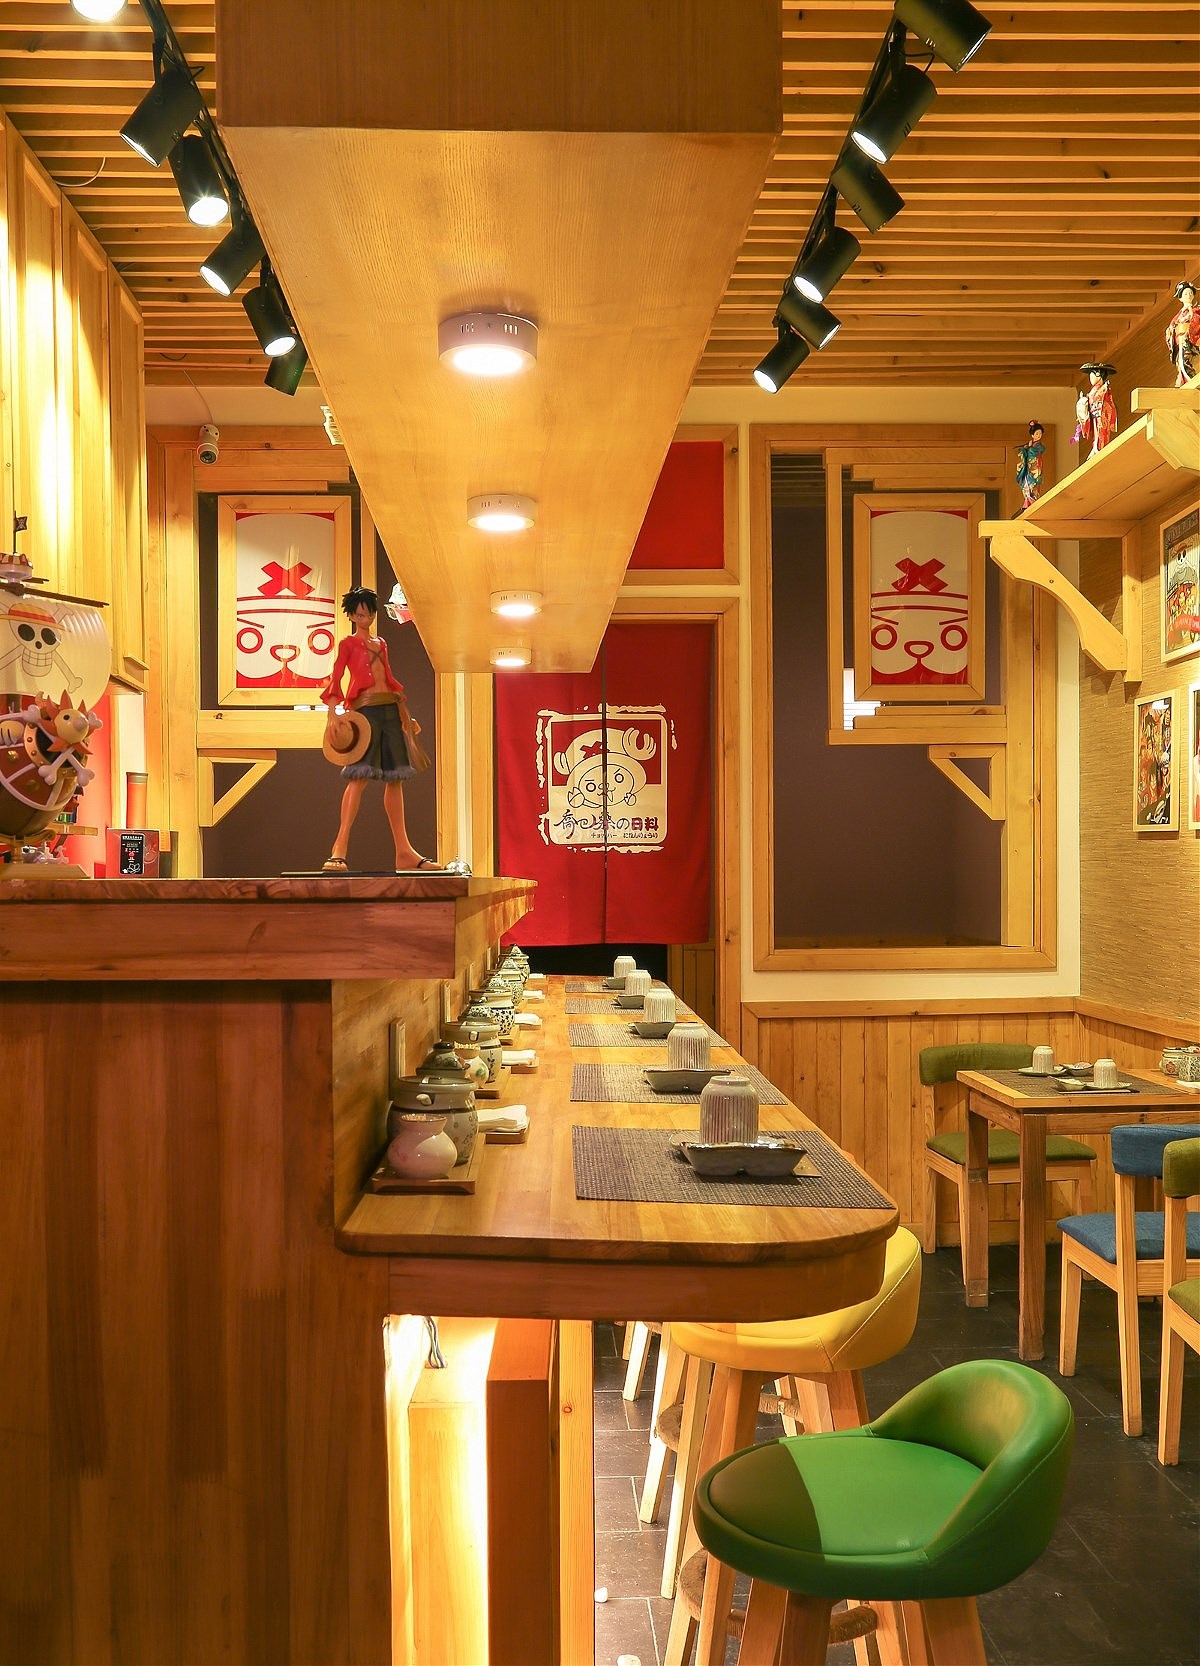 乔巴桑日料餐厅之座位布置效果图